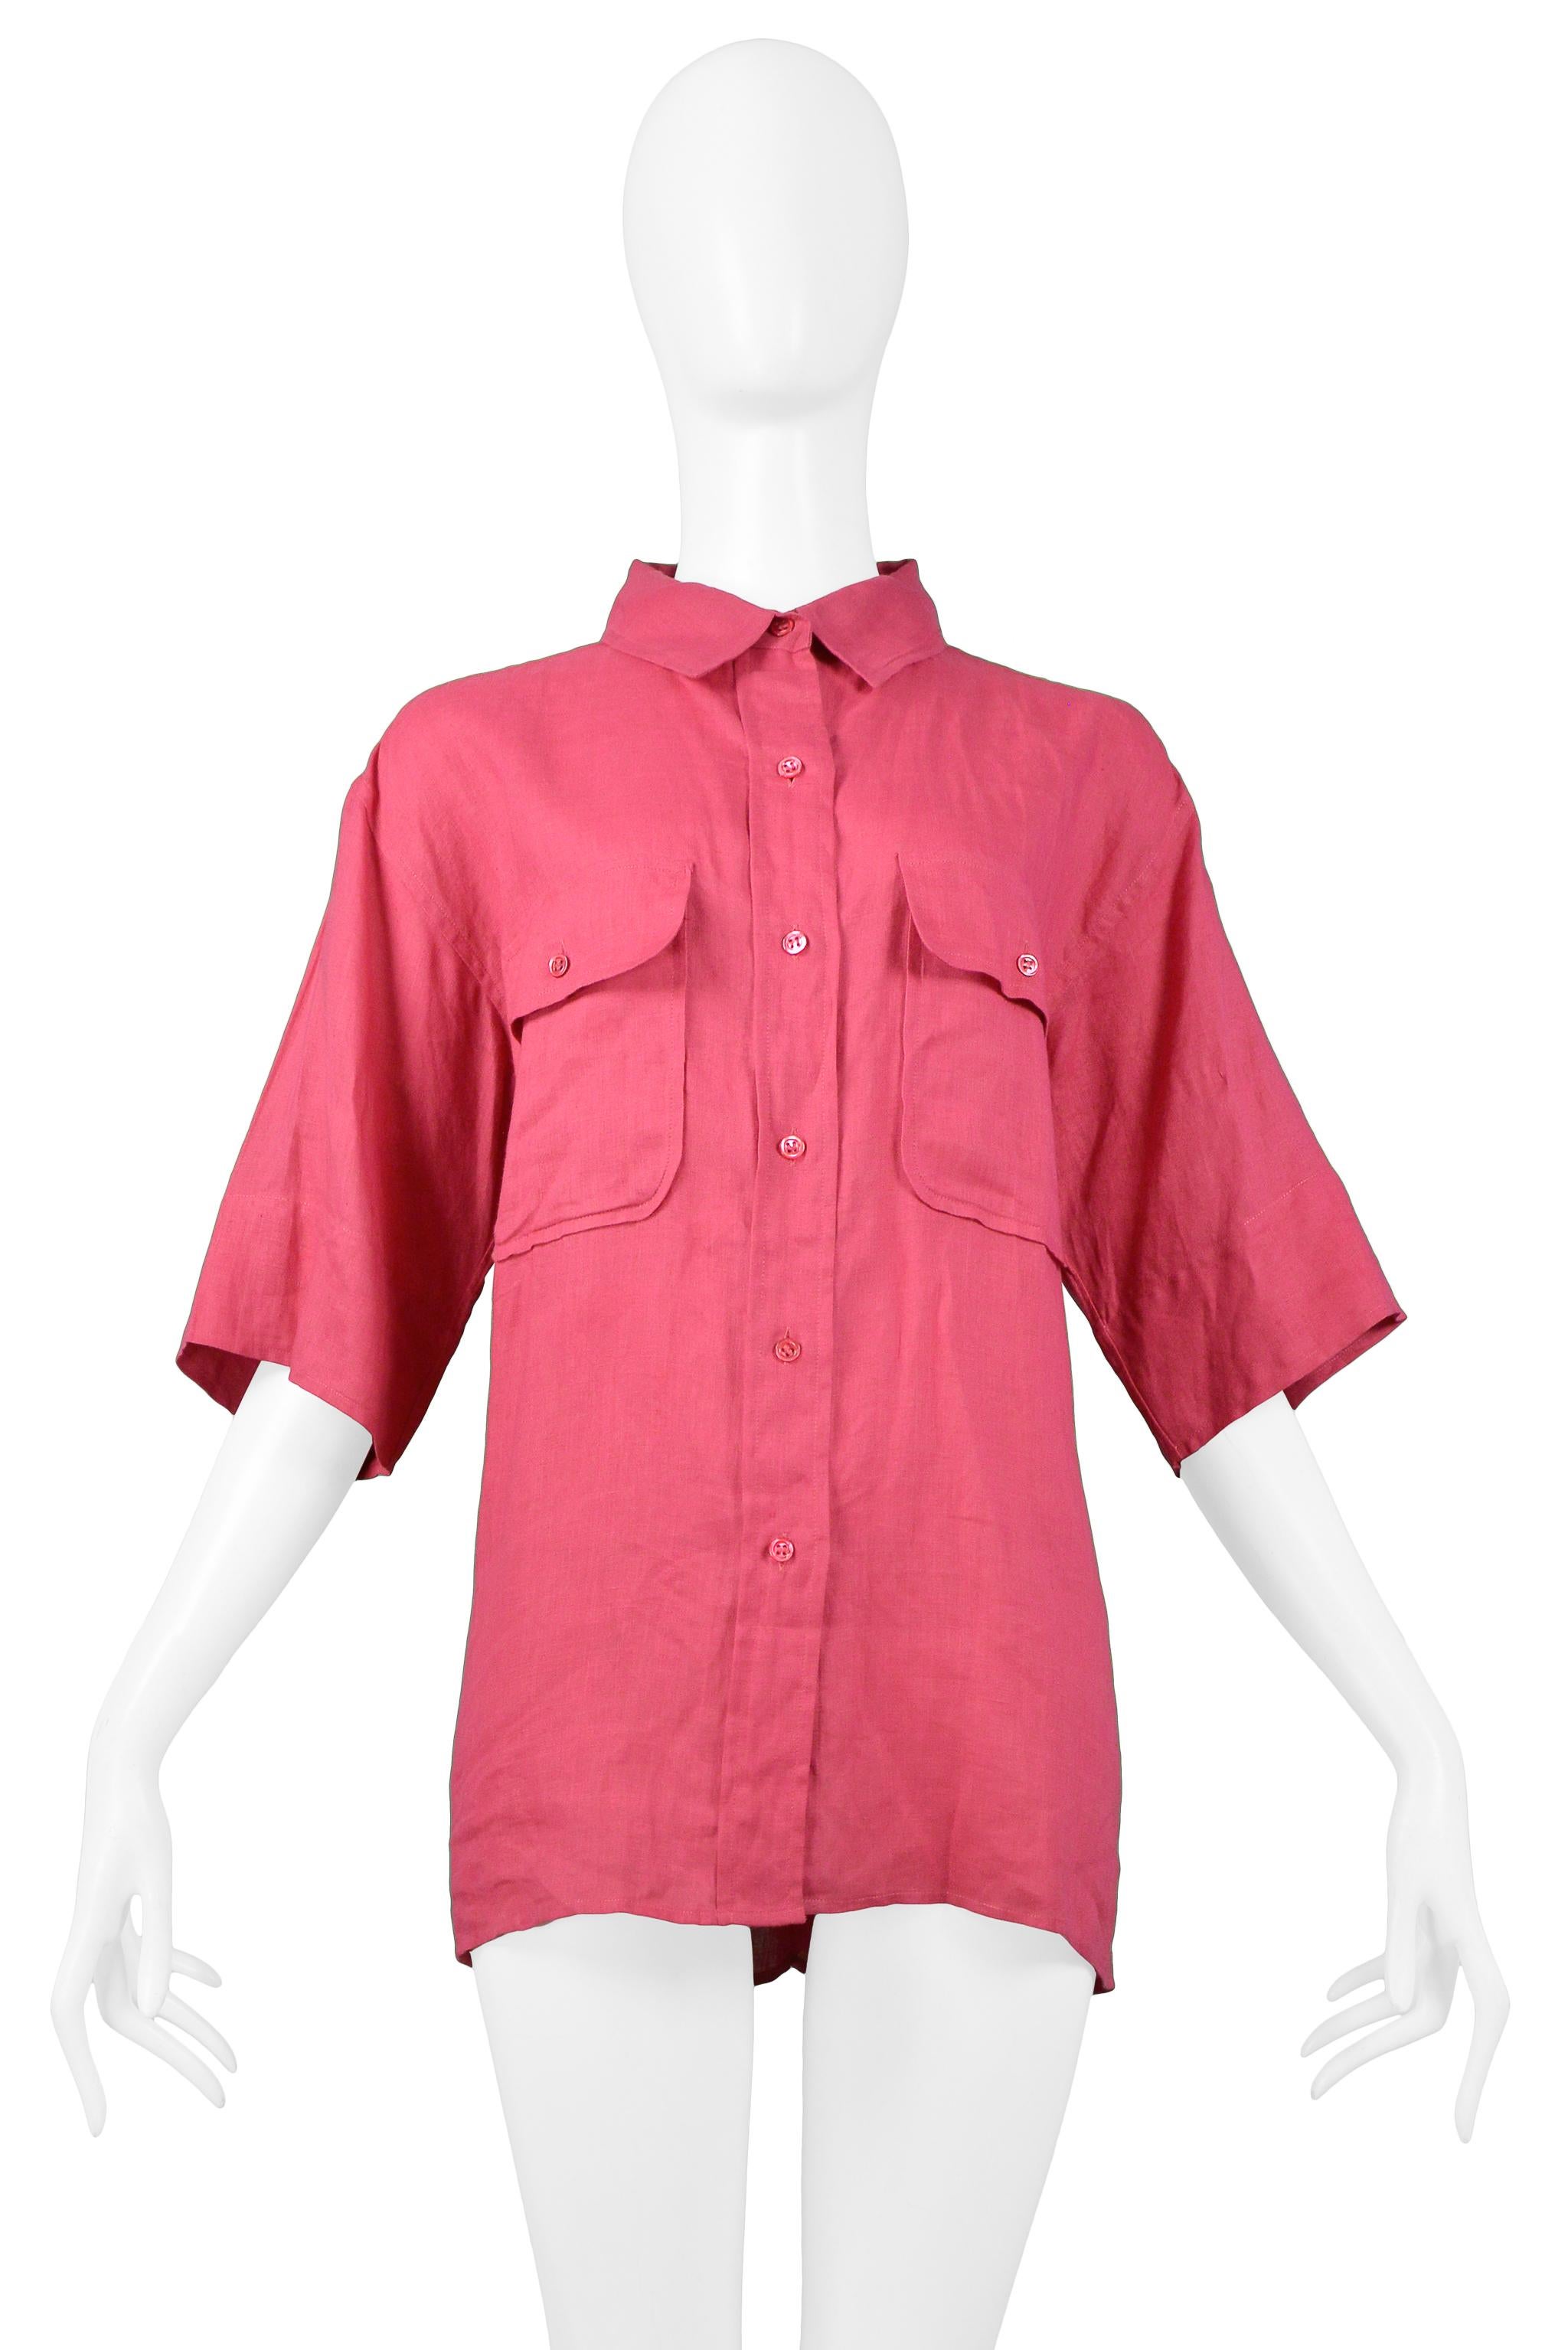 Resurrection Vintage freut sich, ein Yves Saint Laurent Safarihemd aus rosa Leinen anbieten zu können. Es hat einen aufklappbaren Kragen, eine Knopfleiste, zwei große Taschen mit Knöpfen und einfache Ärmel.

Yves Saint Laurent
Größe: